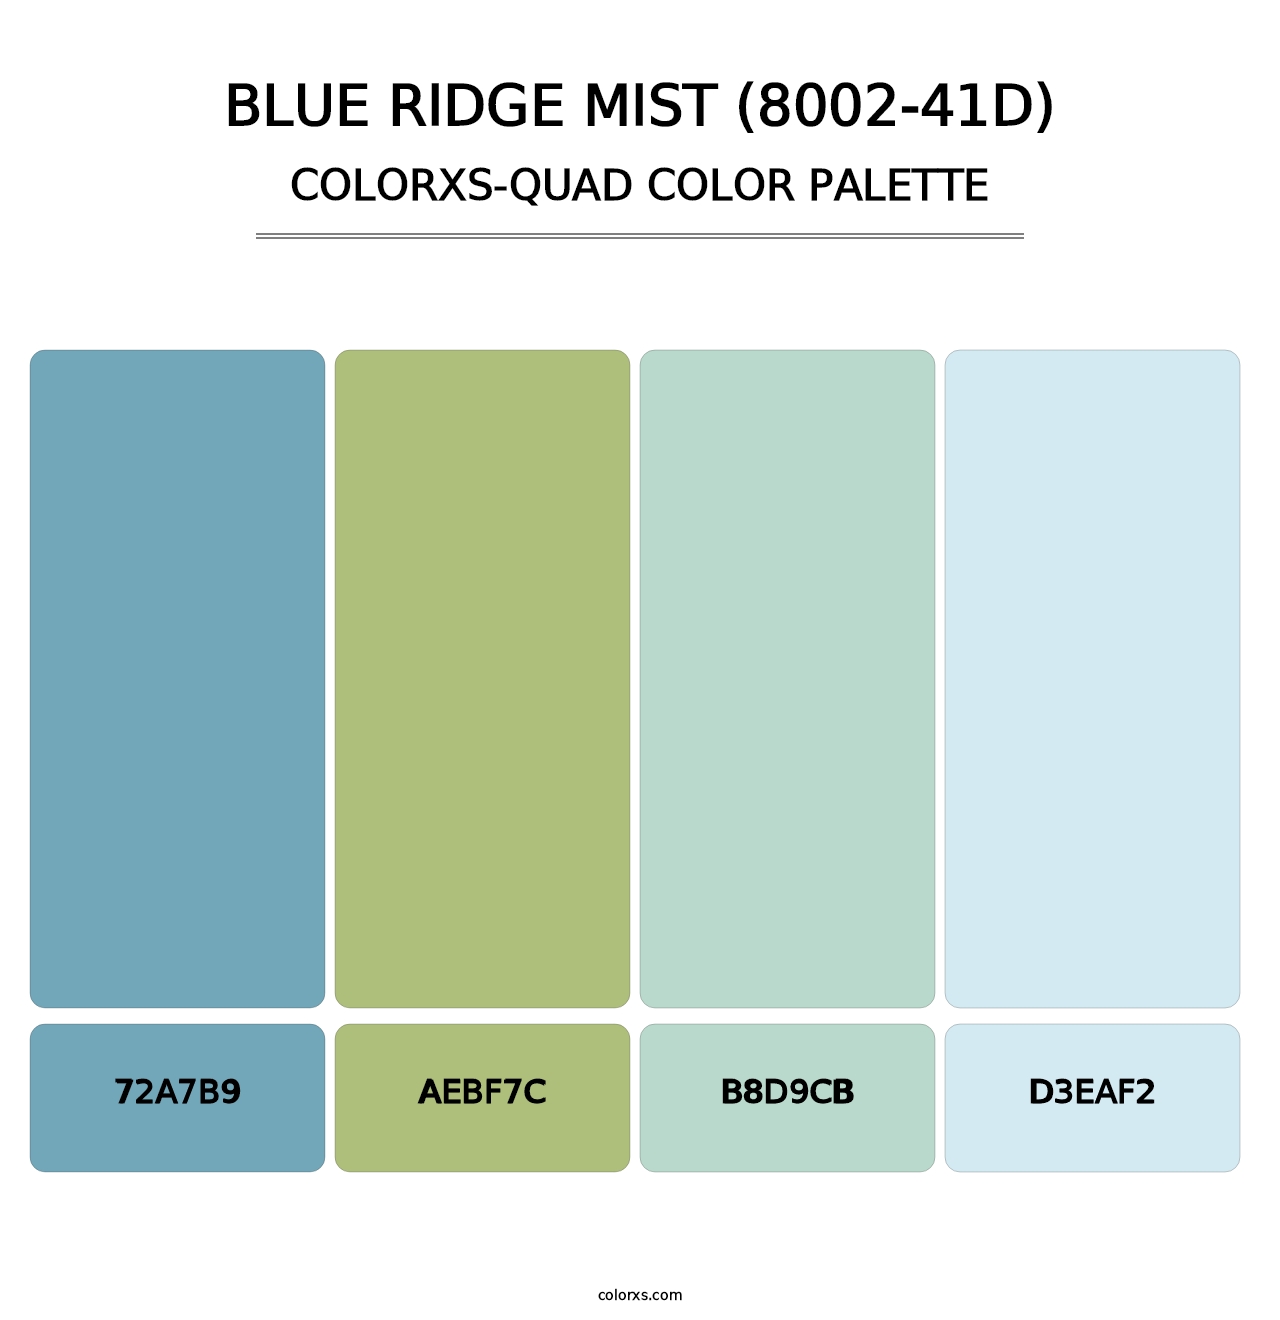 Blue Ridge Mist (8002-41D) - Colorxs Quad Palette